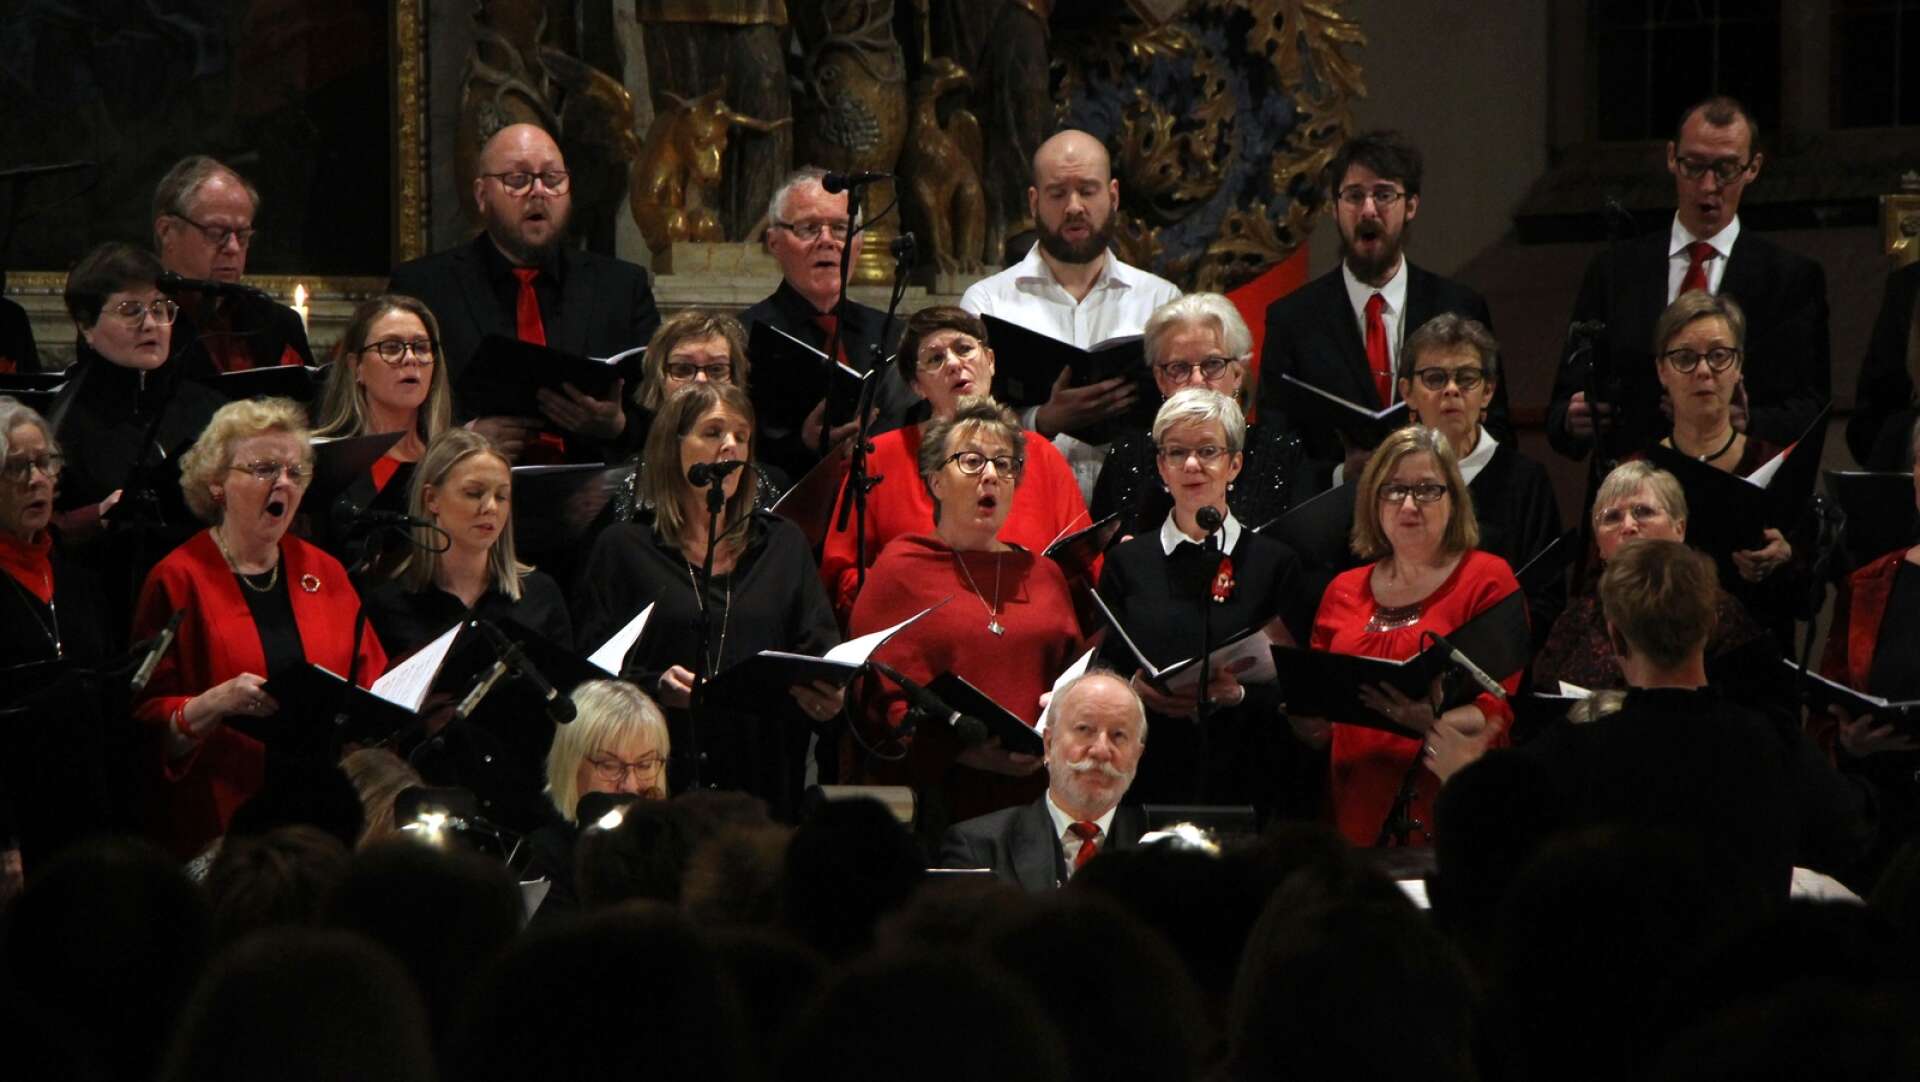 Vid fjärde advent hölls den traditionsenliga julkonserten i Domkyrkan i Mariestad, där Cantabilekören, instrumentalister och solister fyllde kyrkan med julmusik. 